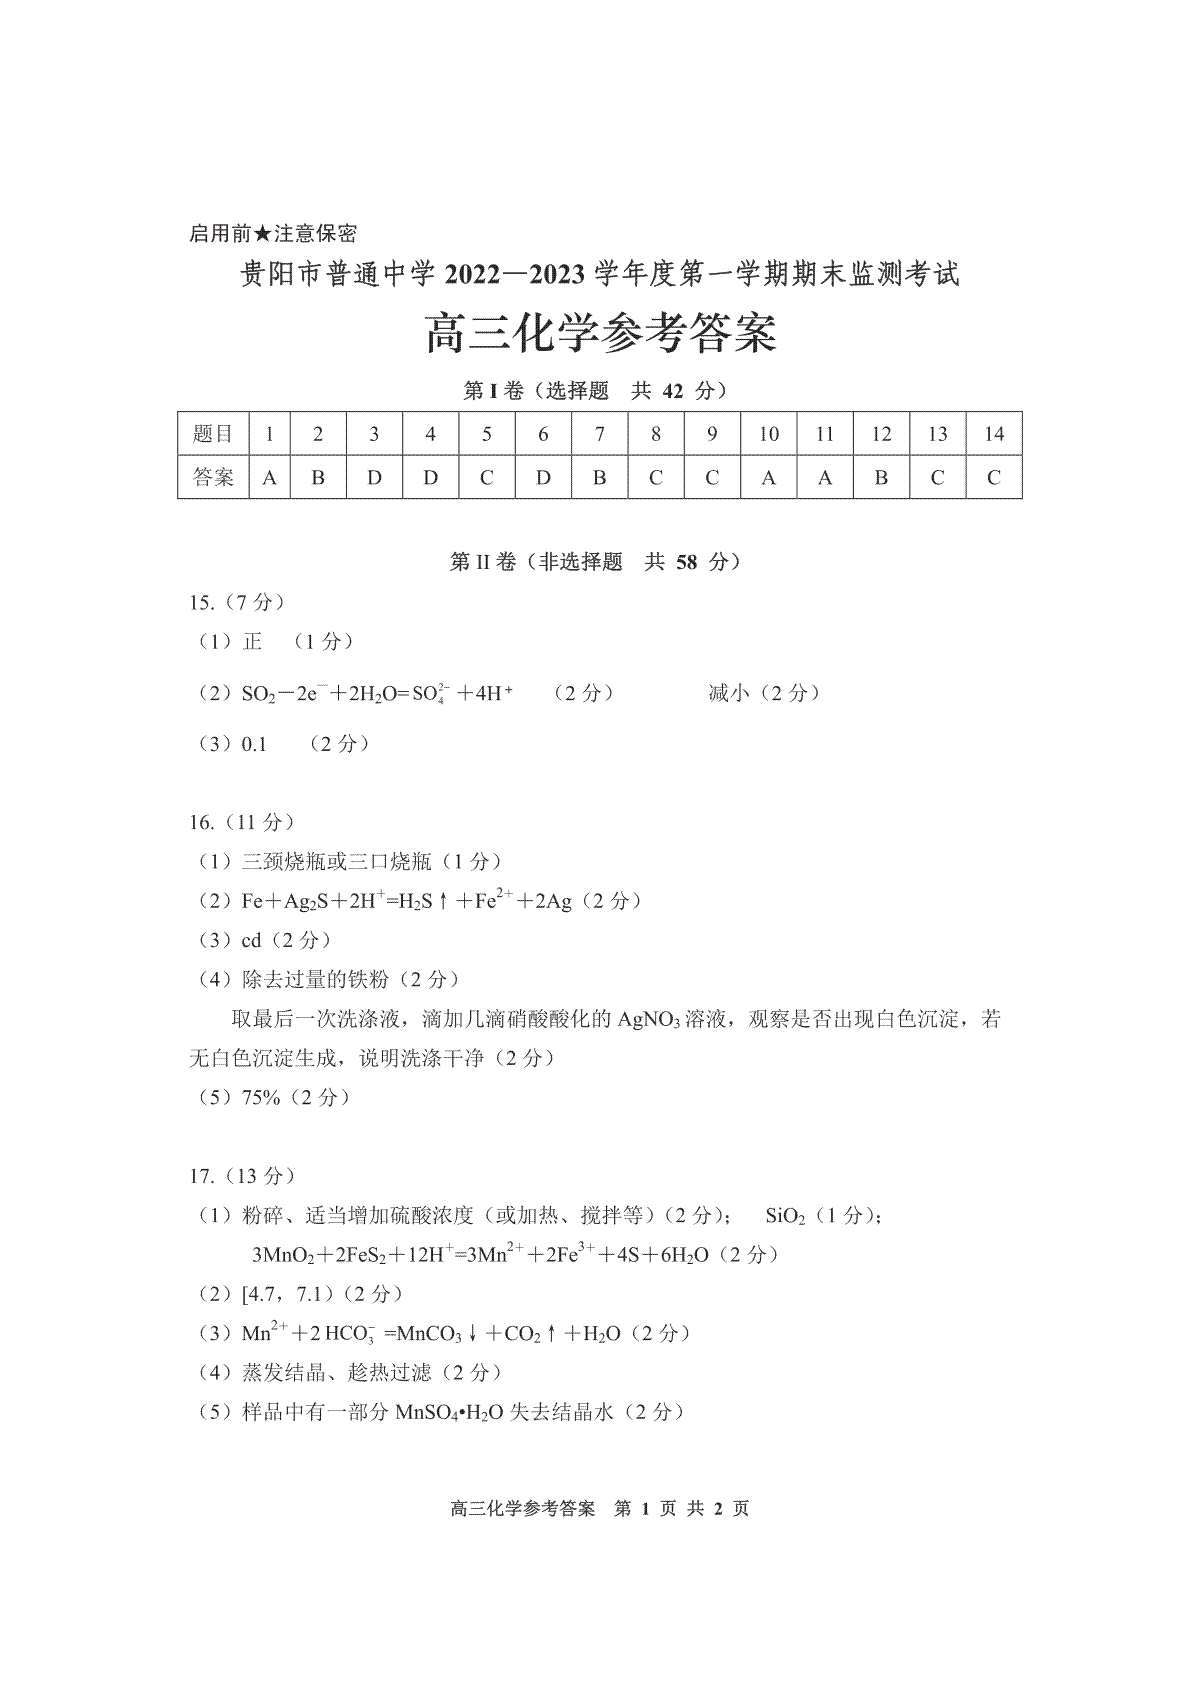 贵阳市普通中学 2022-2023 学年度第一学期期末监测考试试卷高三地化学参考答案